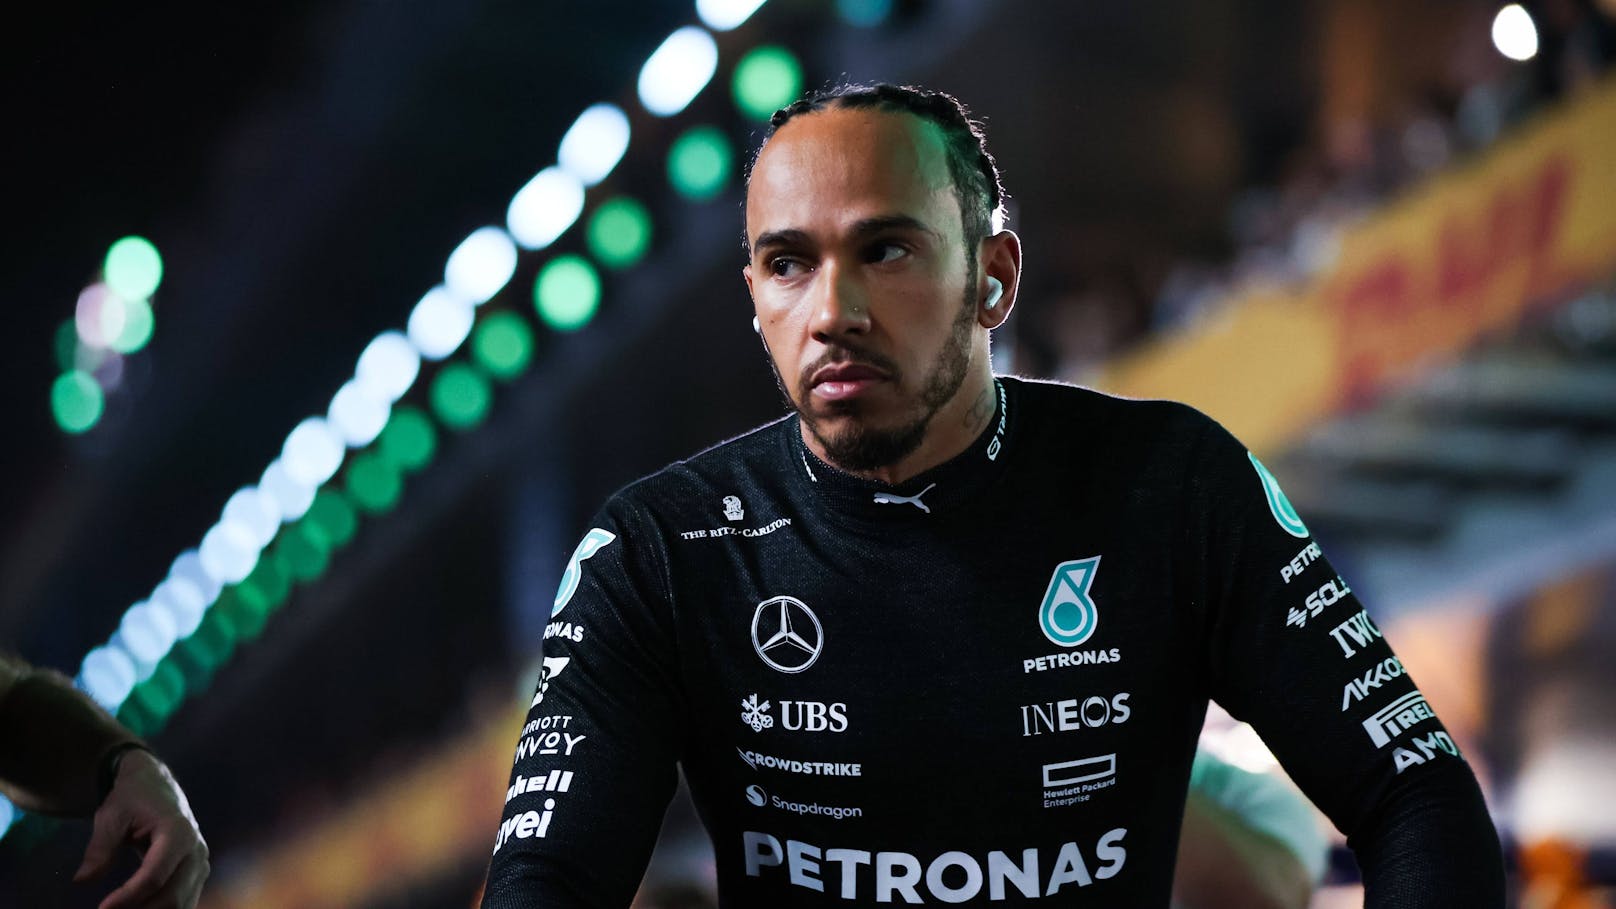 Hamilton frustriert: "Macht definitiv keinen Spaß"